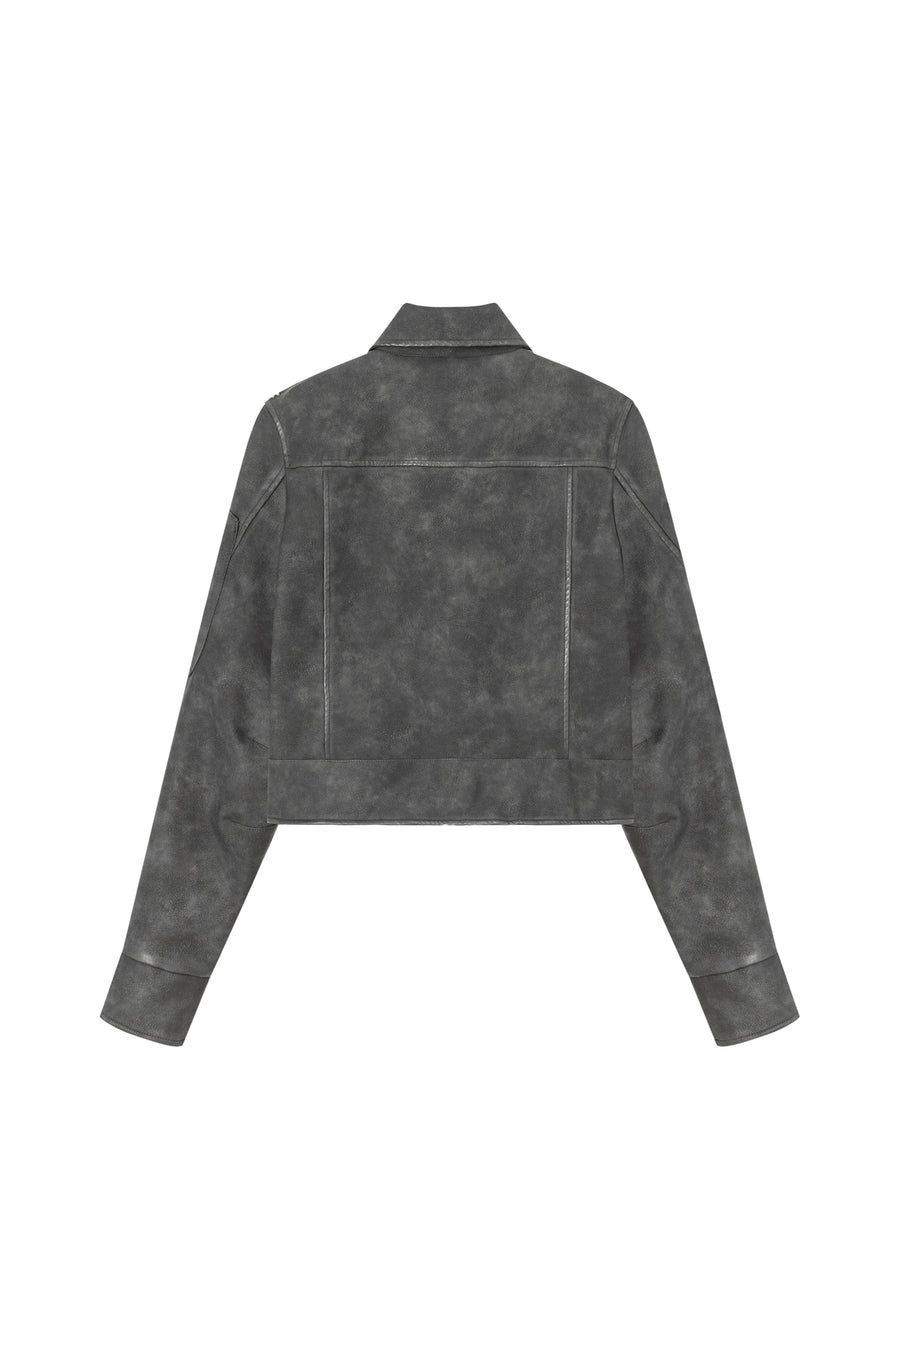 CHUU Simple Printed Leather Jacket